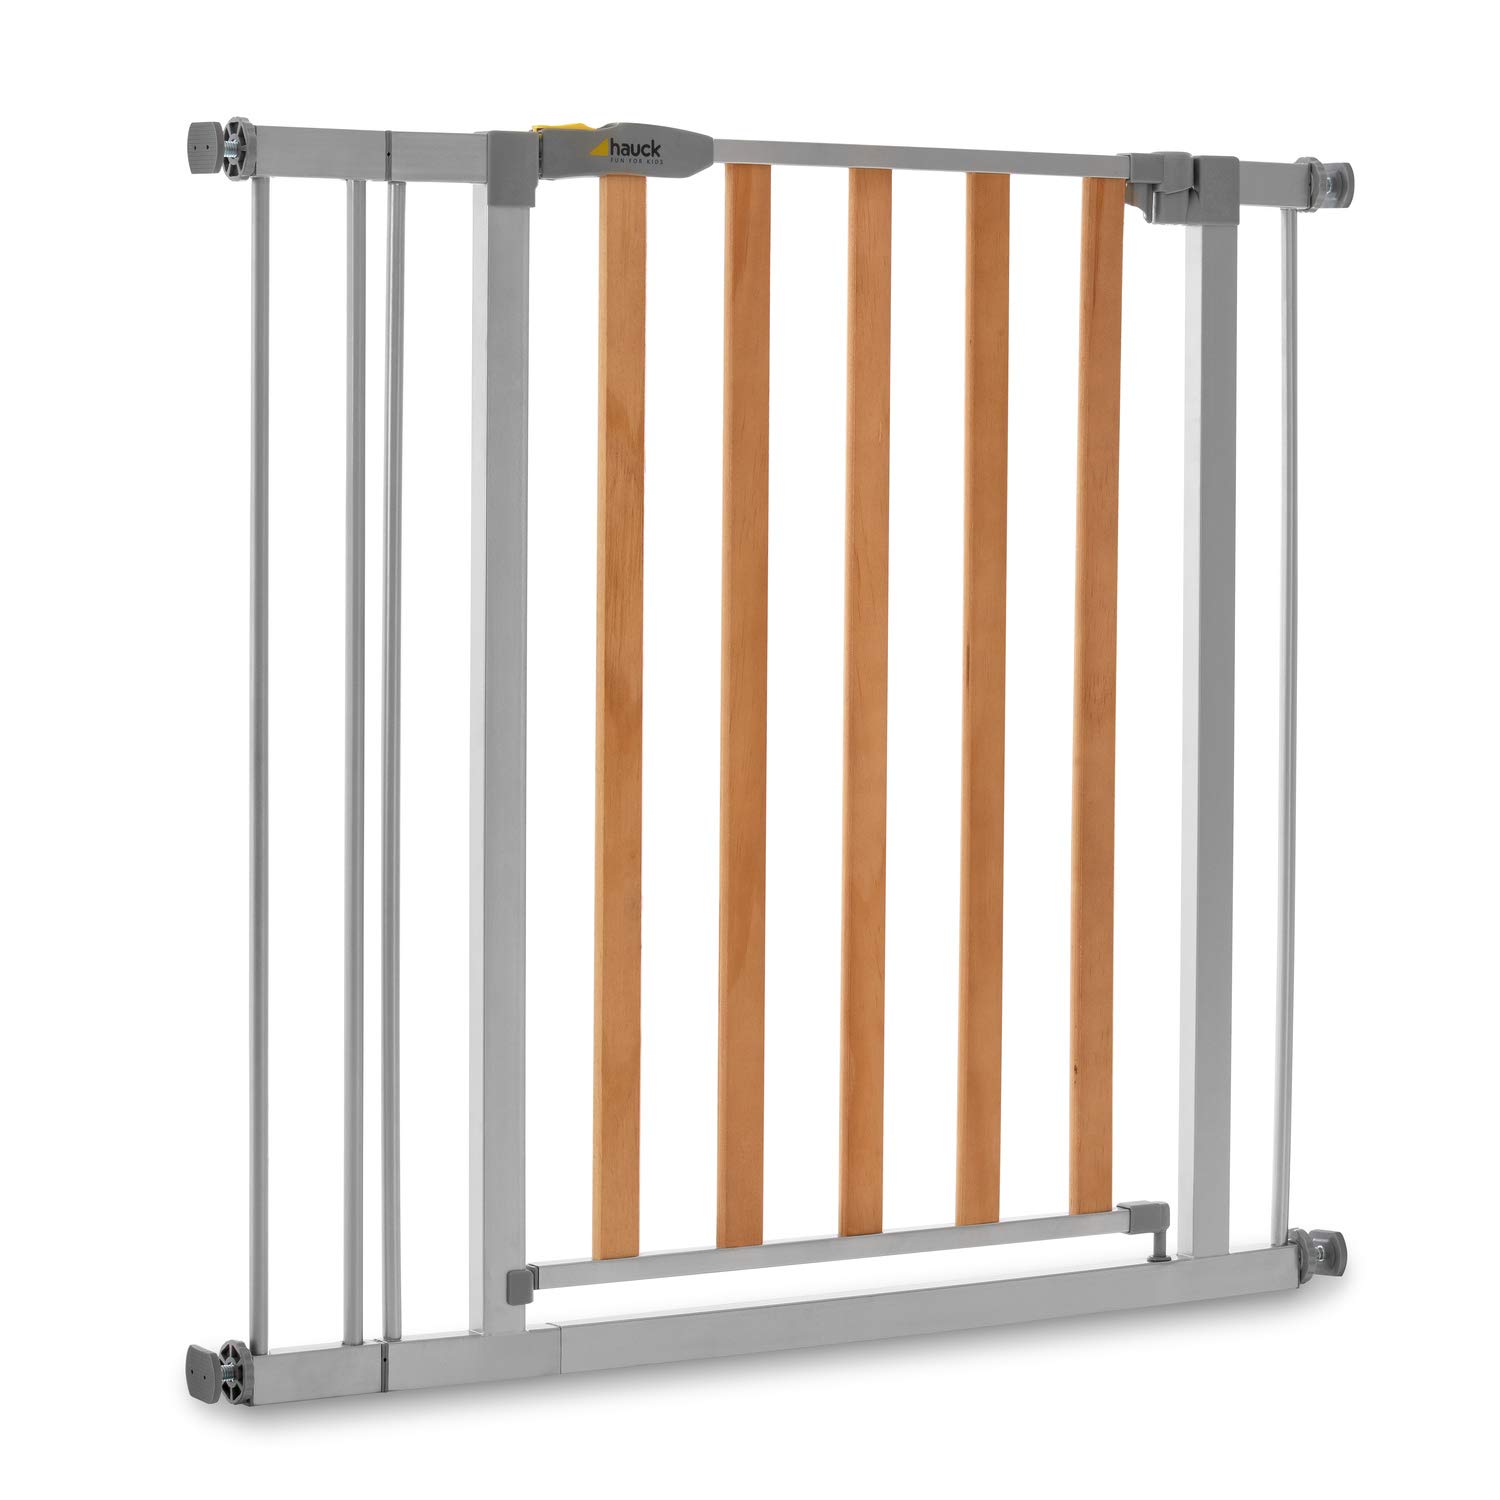 Hauck Türschutzgitter / Treppenschutzgitter für Kinder Wood Lock 2 Safety Gate inkl. 9 cm Verlängerung / ohne Bohren / 84 - 89 cm breit / erweiterbar / Metall Holz Gitter / grau